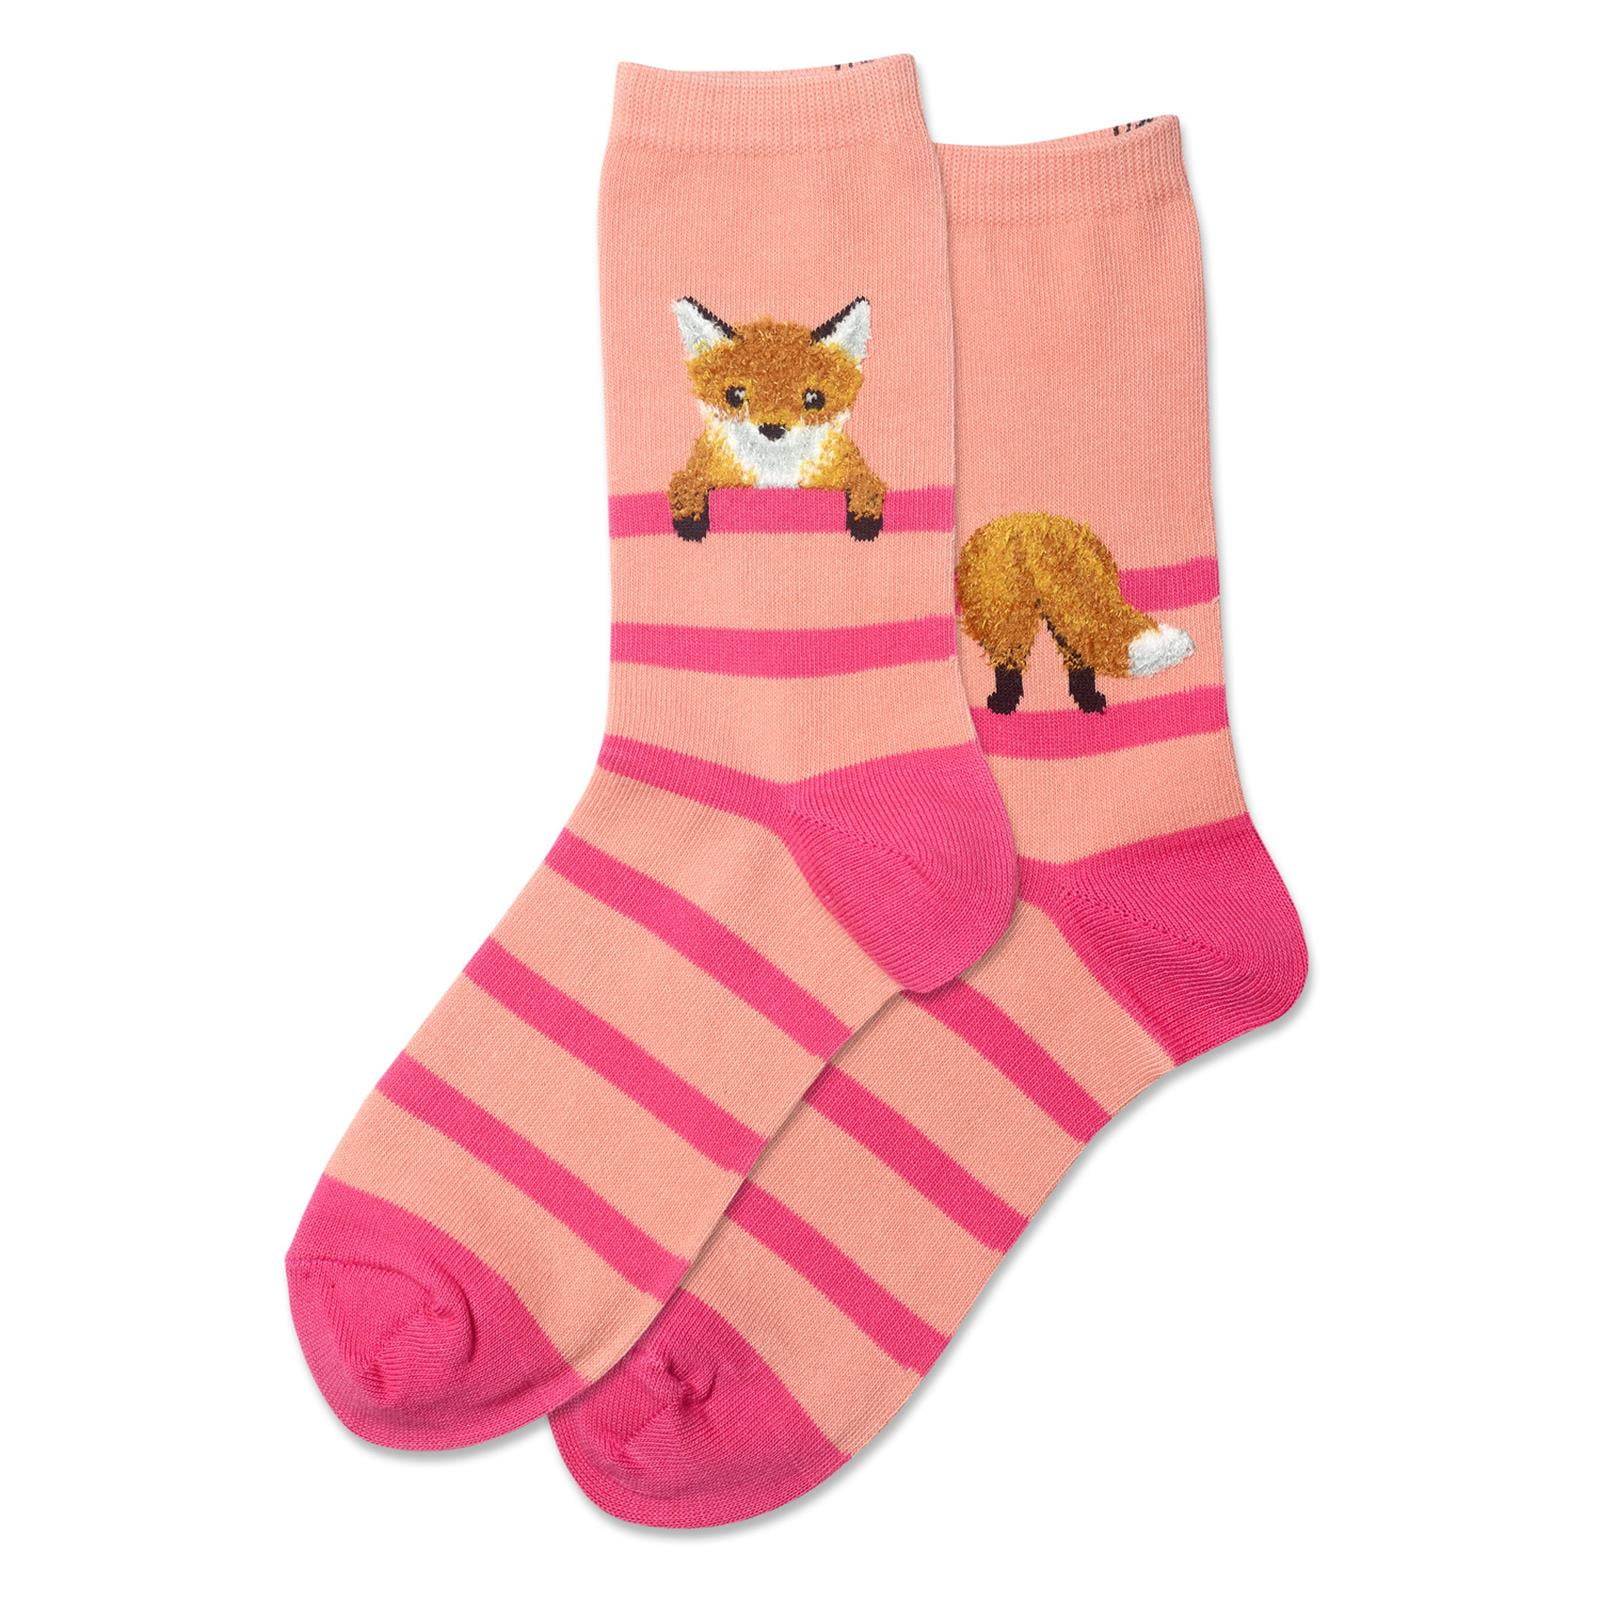 Fuzzy fox socks